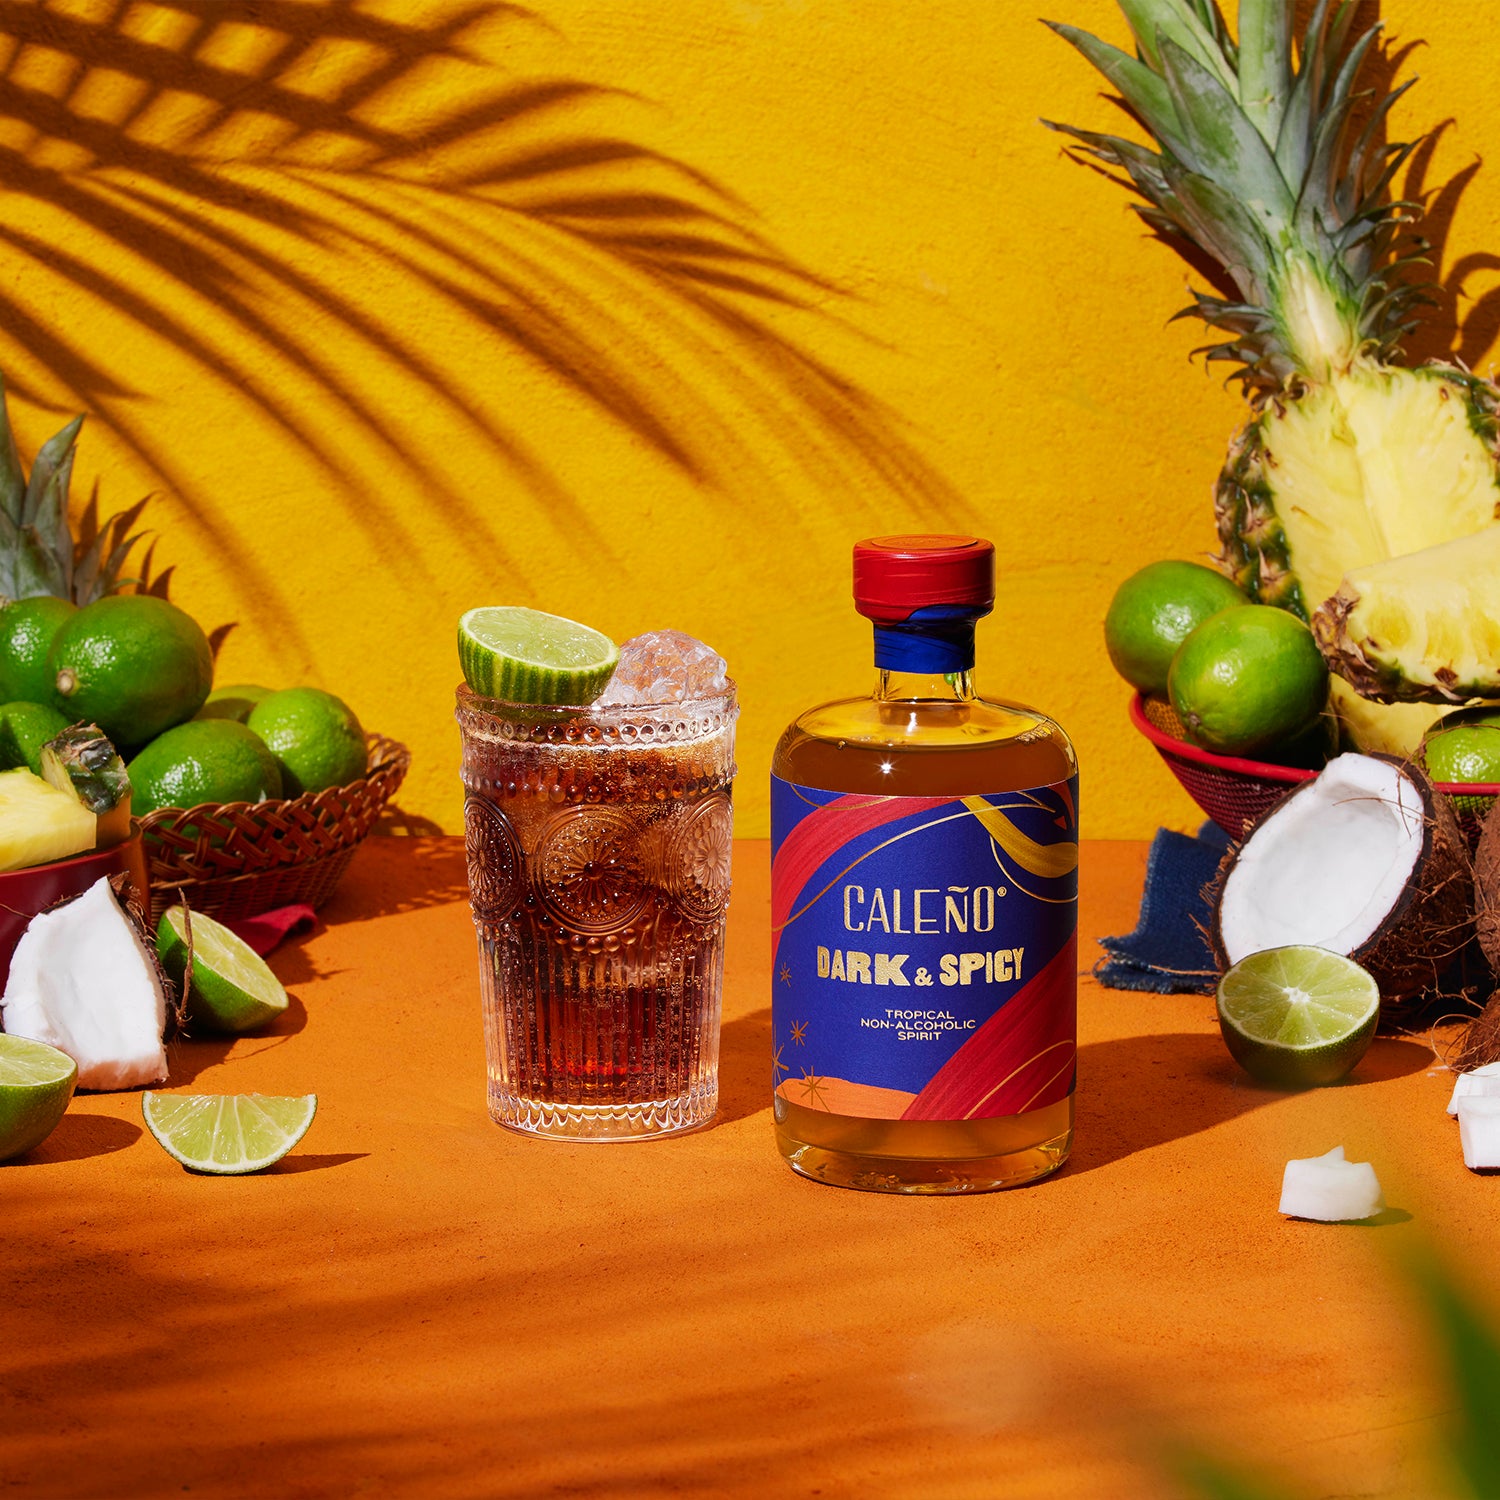 Non-alcoholic rum Caleño Dark & Spicy